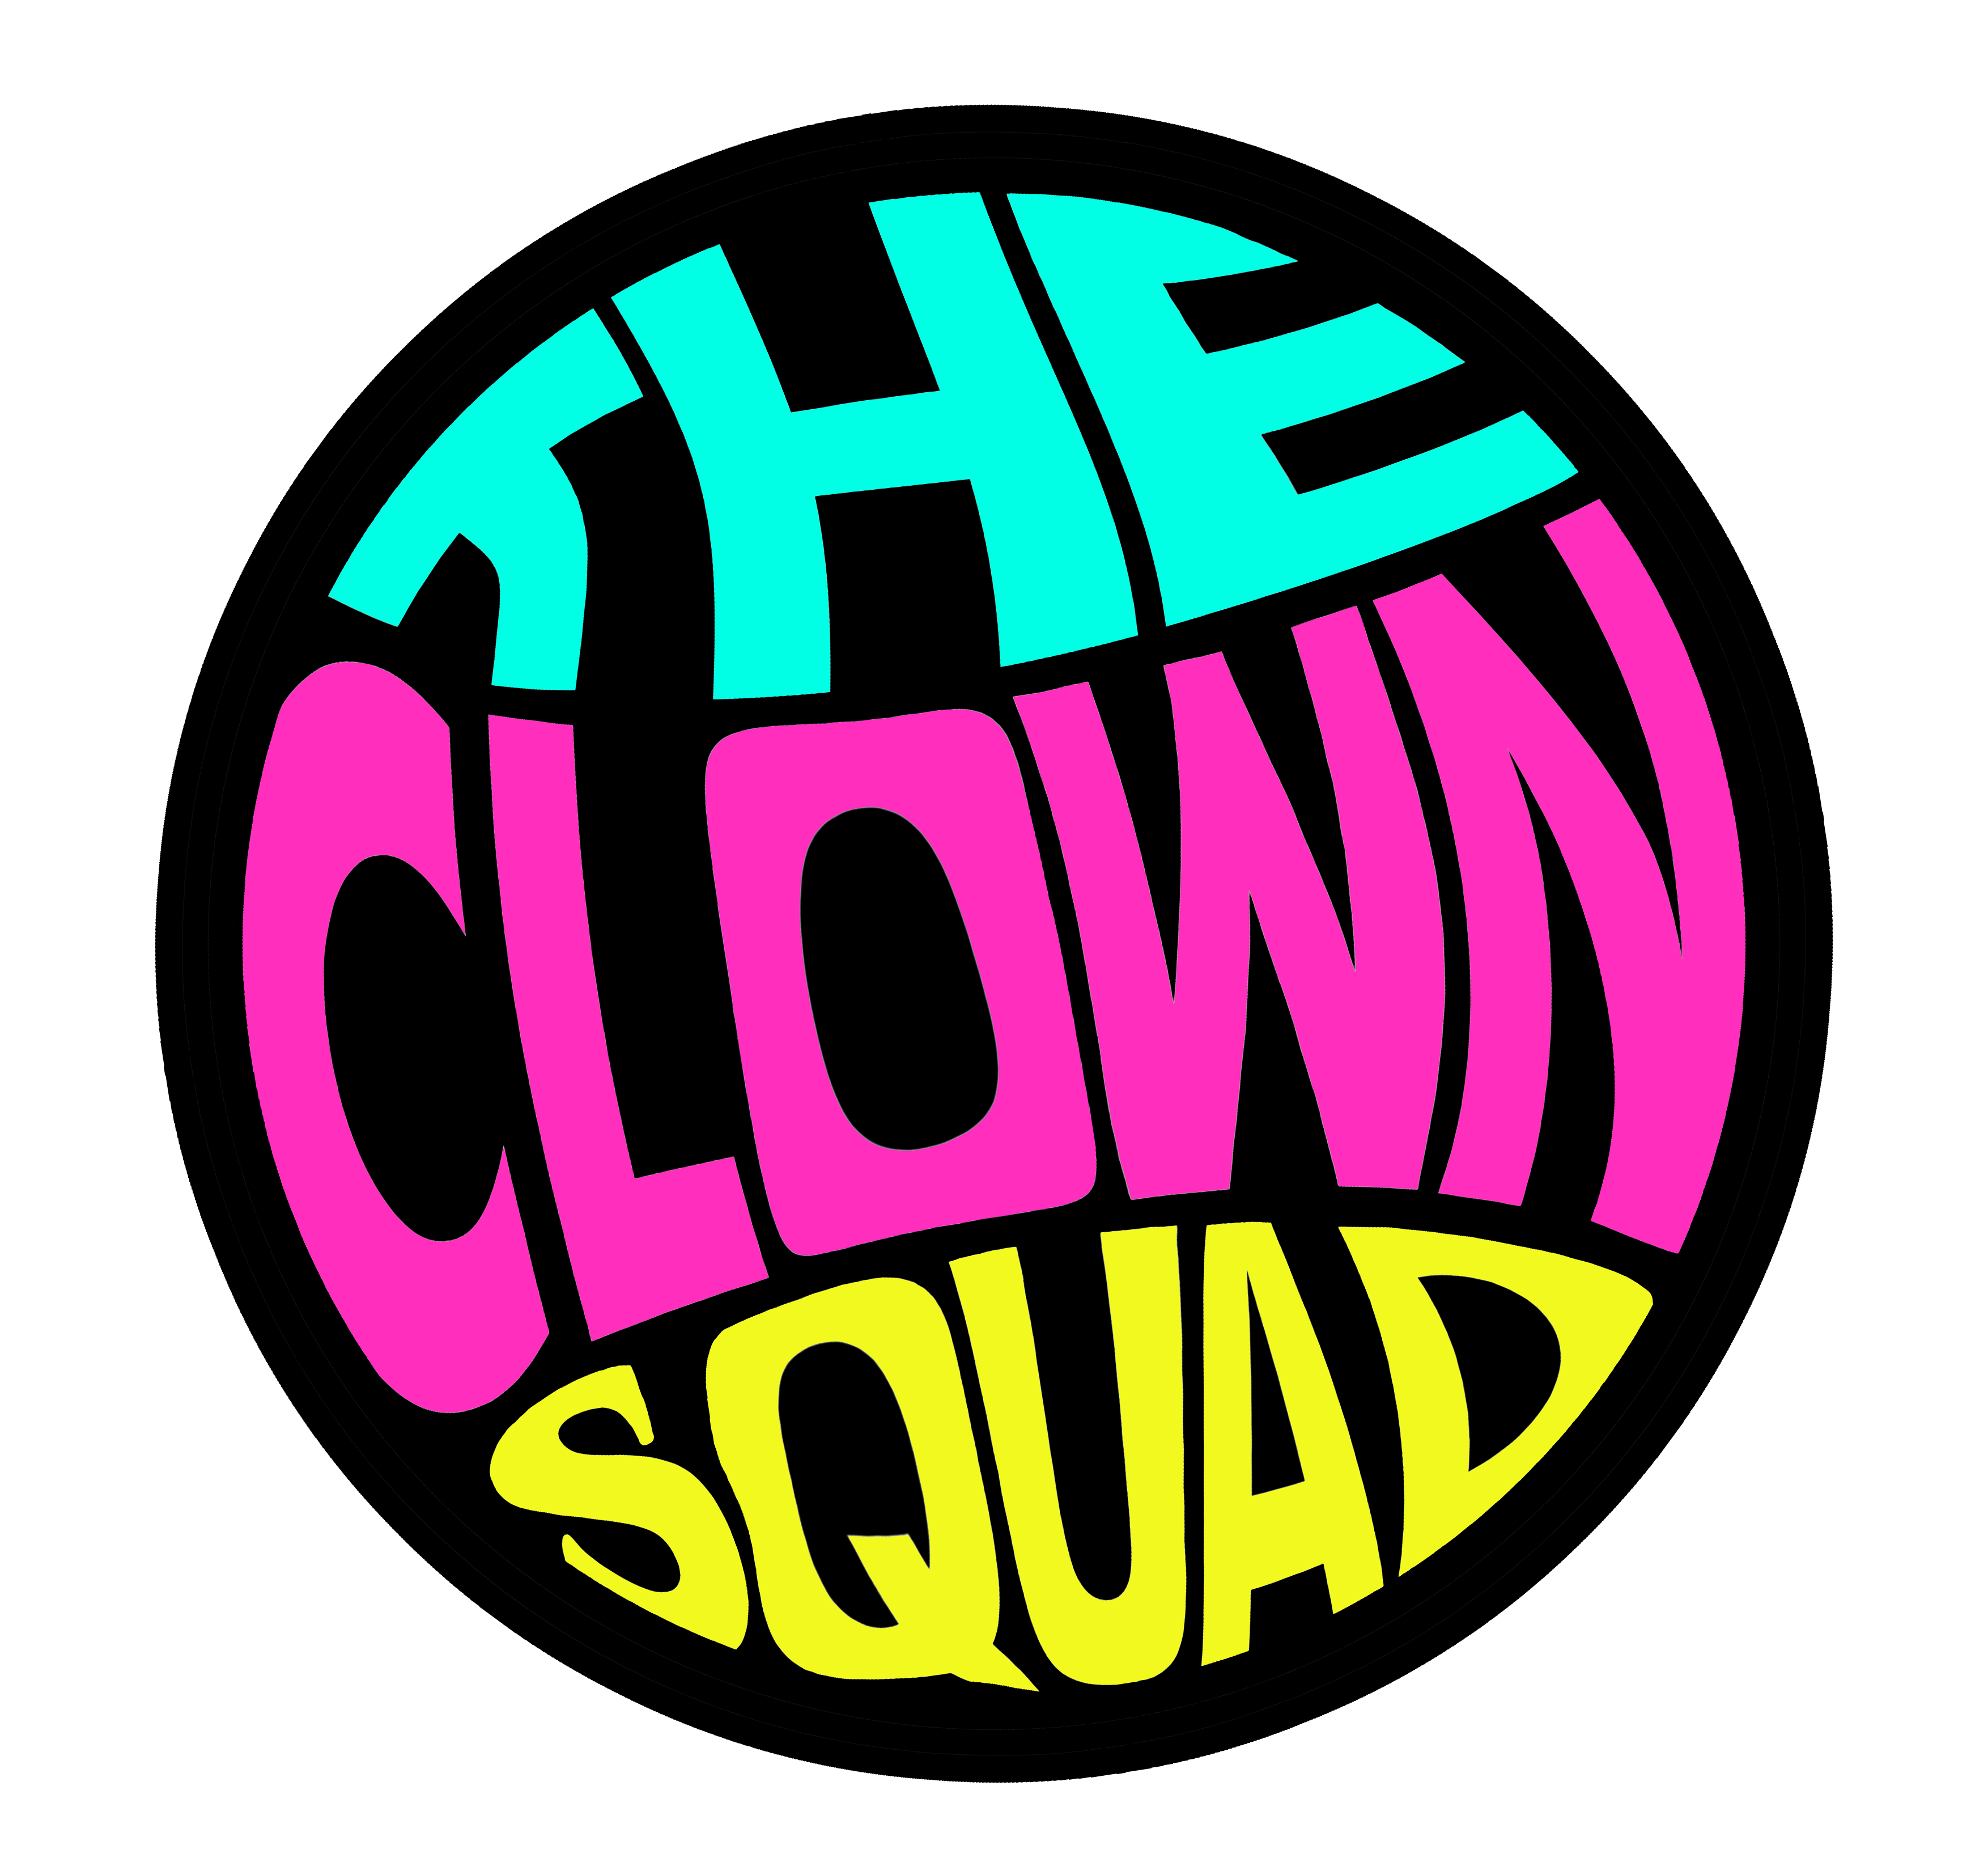 Clown Squad F**K UP!